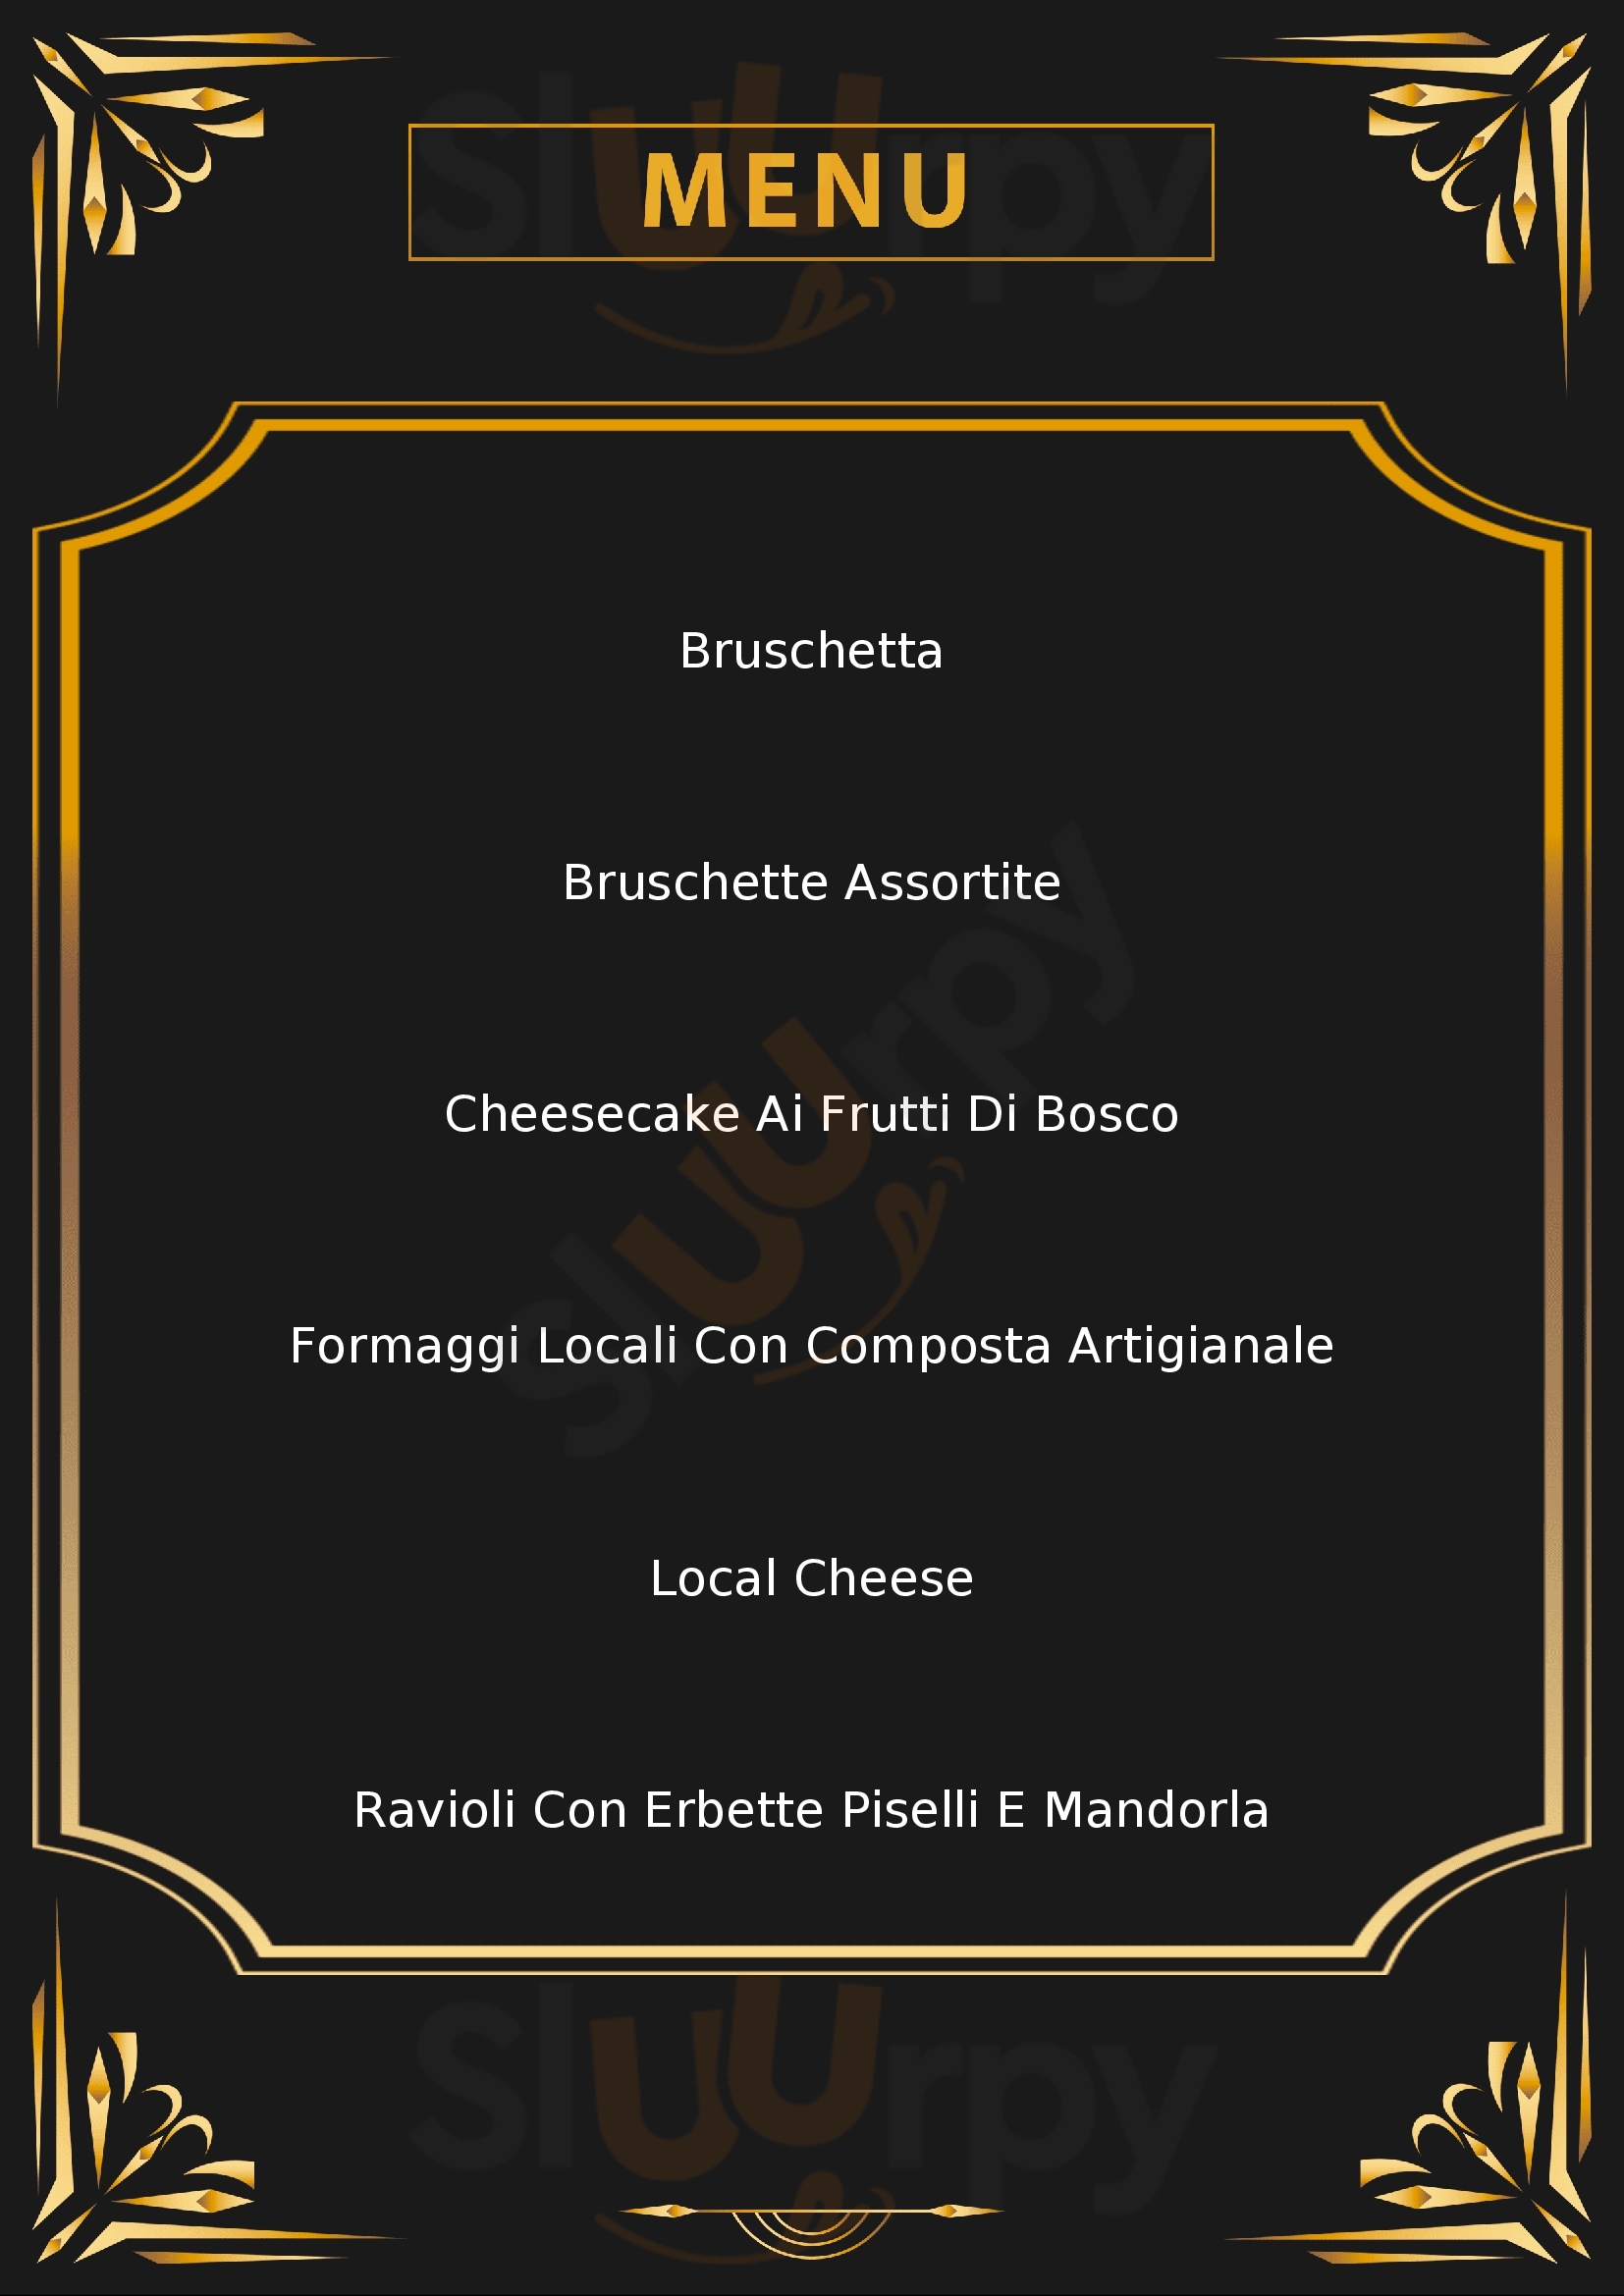 In Pasta - cibo e convivio Lucca menù 1 pagina